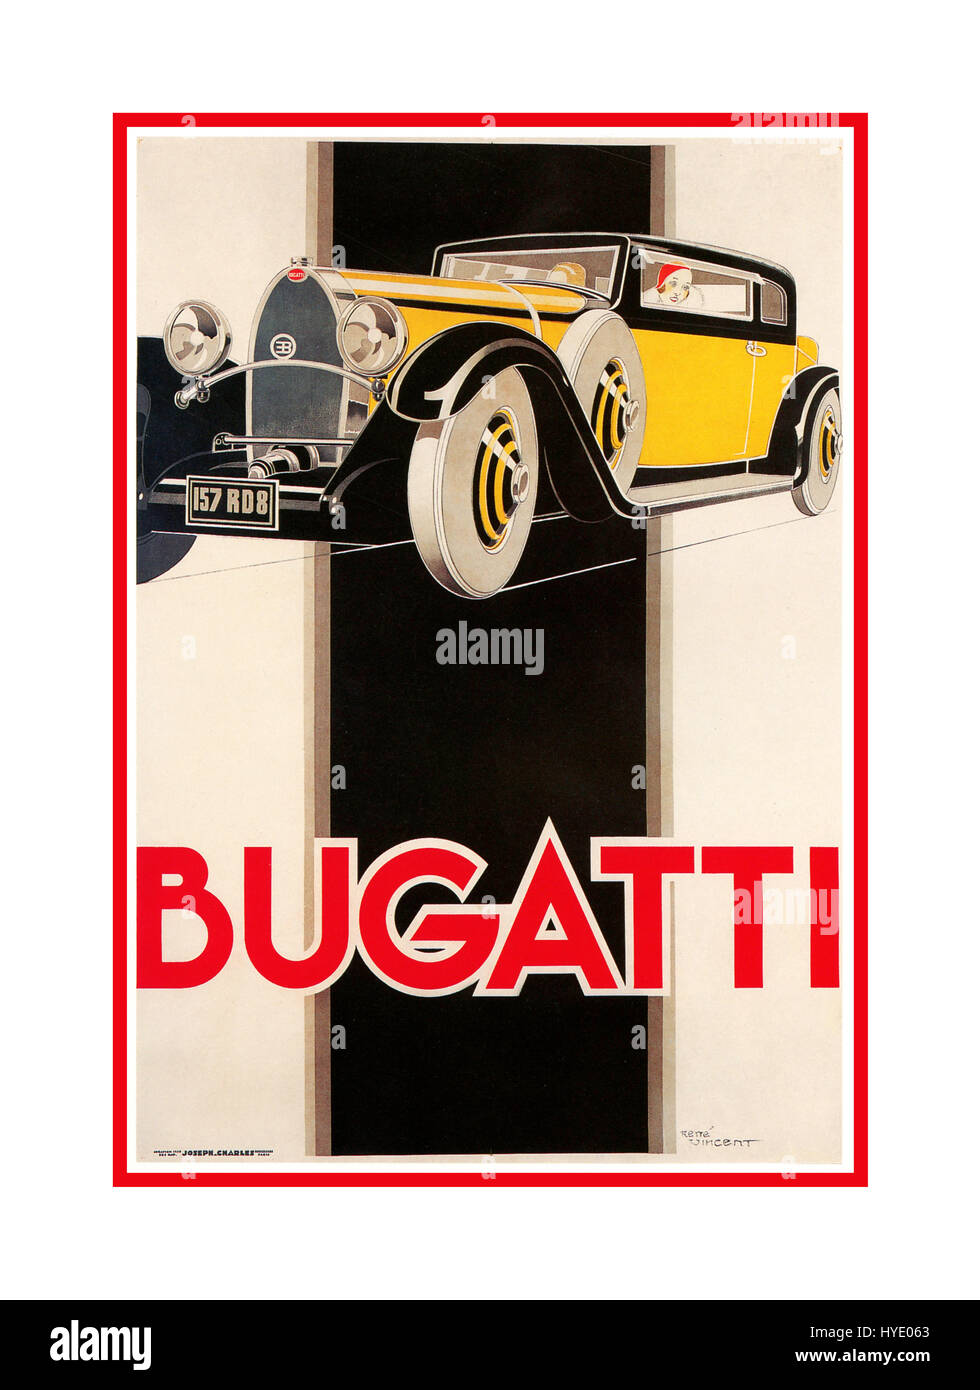 BUGATTI Vintage 1920er Sportwagen Bugatti Motor Racing Poster Automobiles Ettore Bugatti war ein französischer Autohersteller von Hochleistungsfahrzeugen, gegründet 1909 Stockfoto